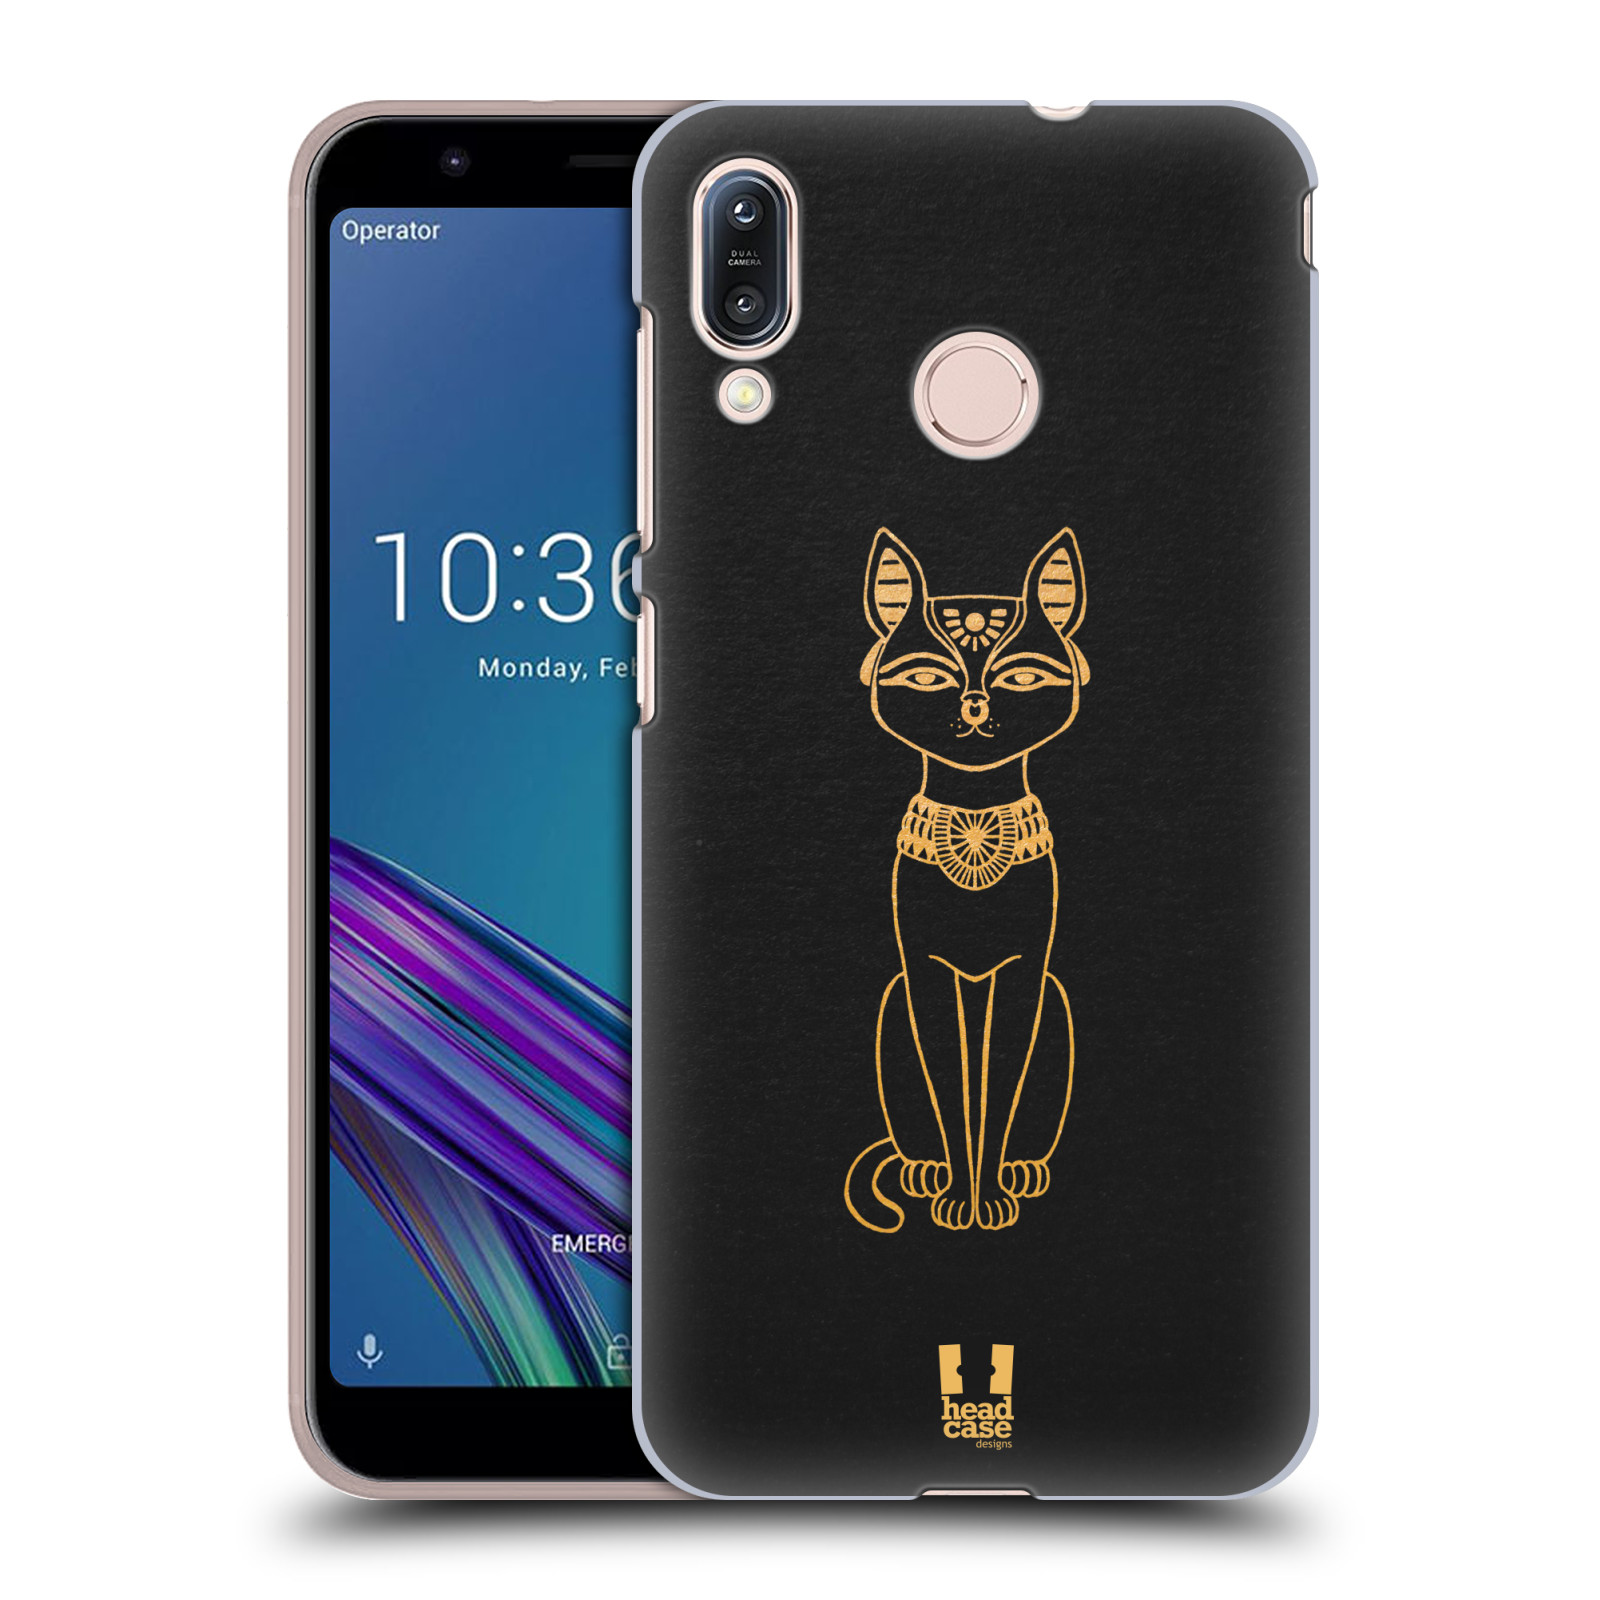 Pouzdro na mobil Asus Zenfone Max M1 (ZB555KL) - HEAD CASE - vzor EGYPT zlatá a černá KOČKA